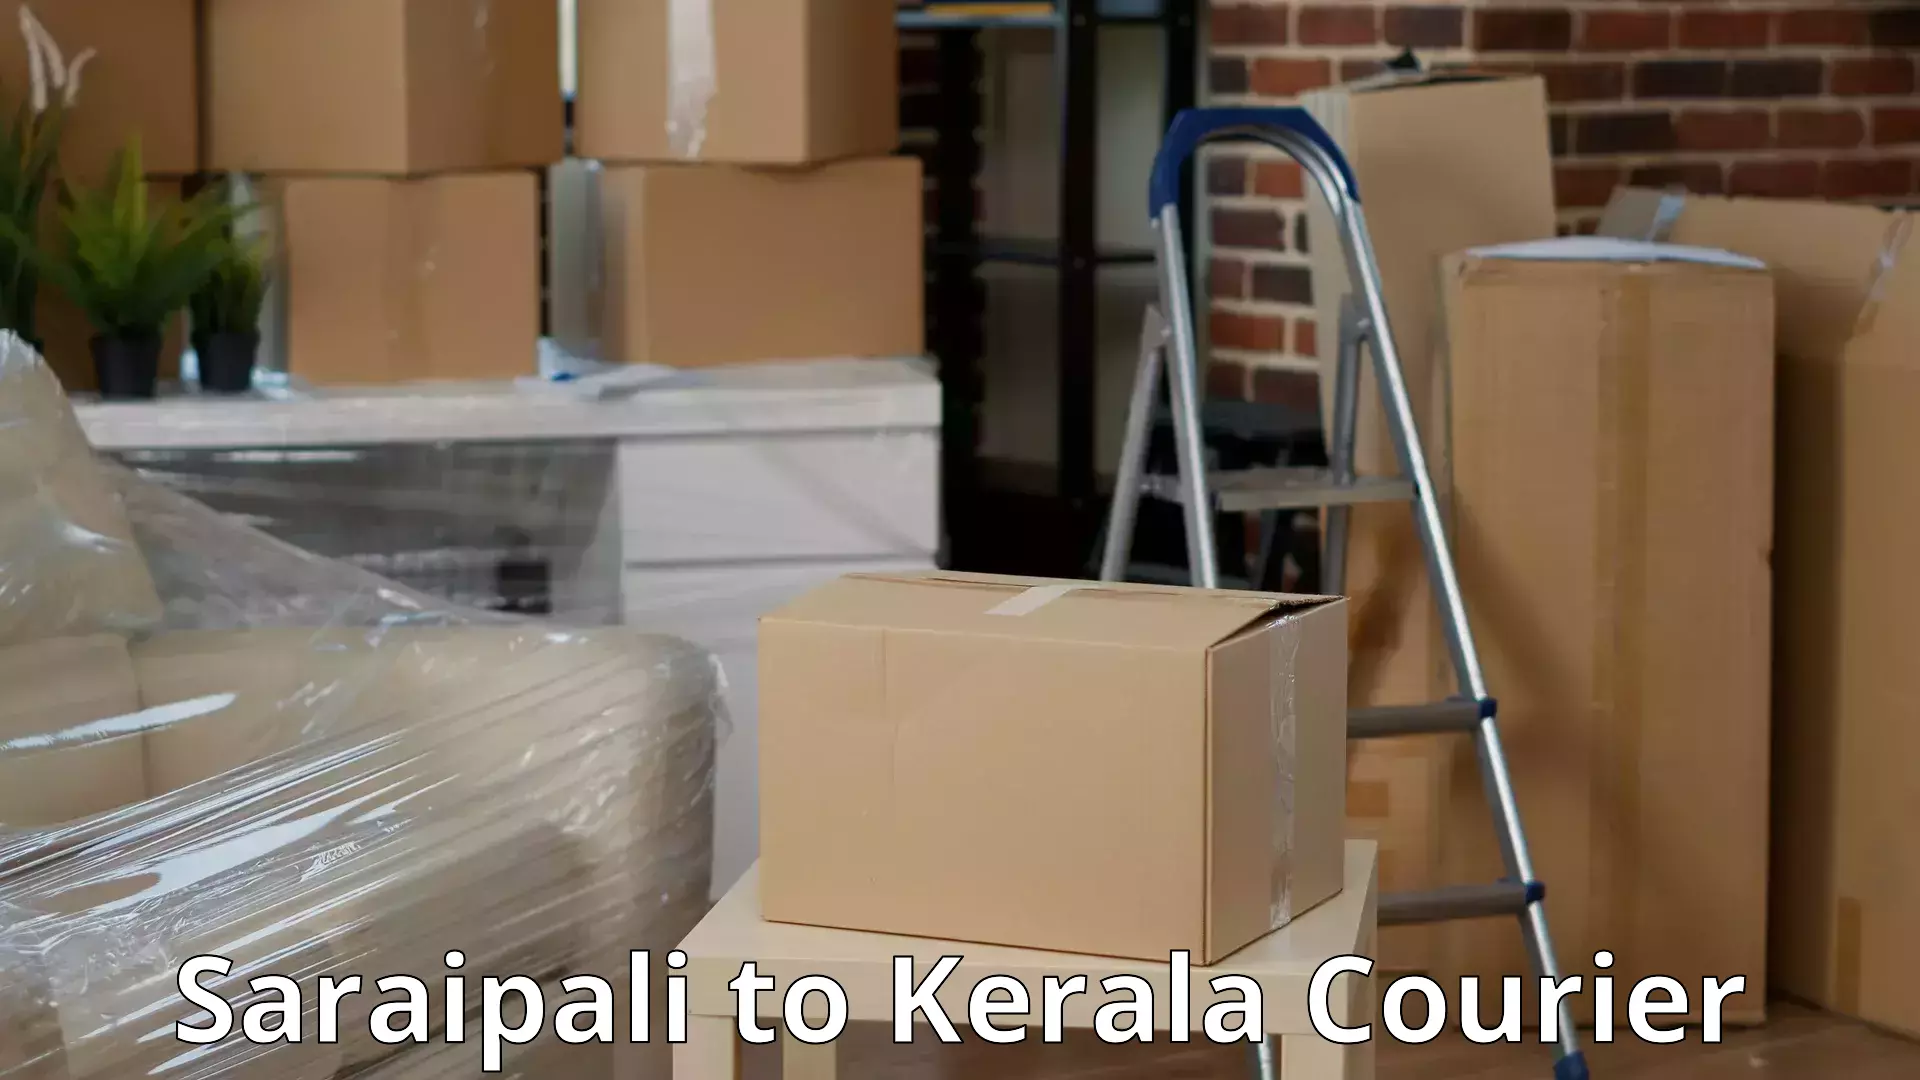 Residential furniture transport Saraipali to Kerala